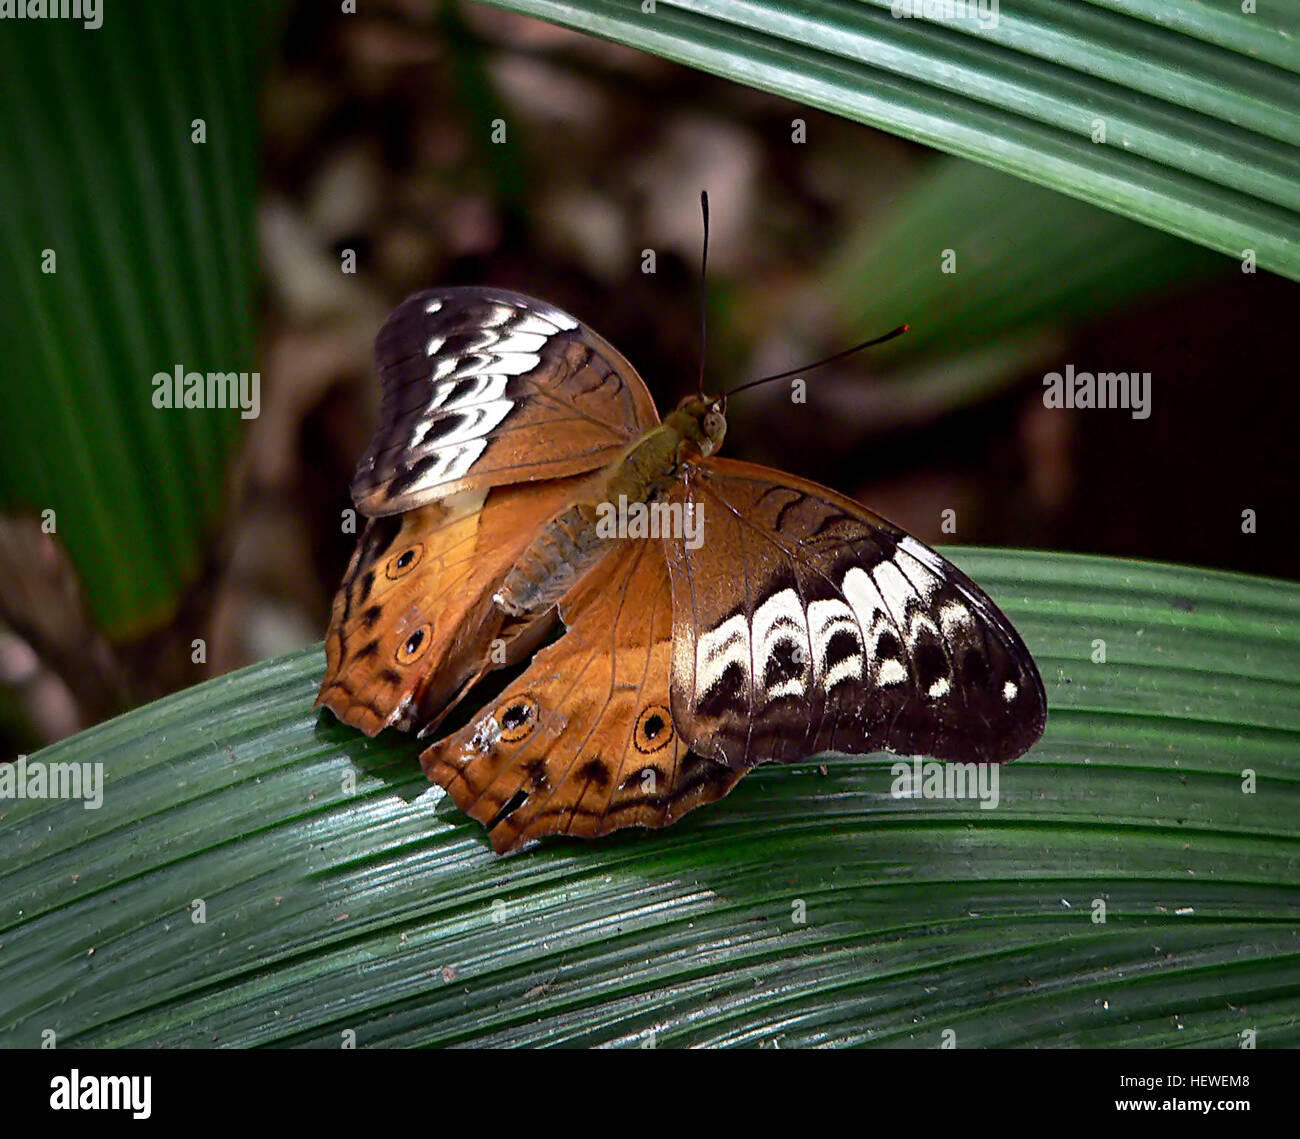 L'homme papillon Cruiser est brun-orange avec une fine bordure noire autour de la partie supérieure des ailes, deux petites taches oculaires sur les ailes postérieures, et de petites taches noires près de l'aile des bords. La femelle papillon a tout à fait différents marquages. Le côté supérieur de la femelle a les extrémités foncées à l'aile antérieure et d'une large bande pâle à travers le centre de chaque aile qui continue sur le bord d'attaque de l'aile postérieure. La femelle possède également deux petites taches oculaires sur chaque bord. Banque D'Images